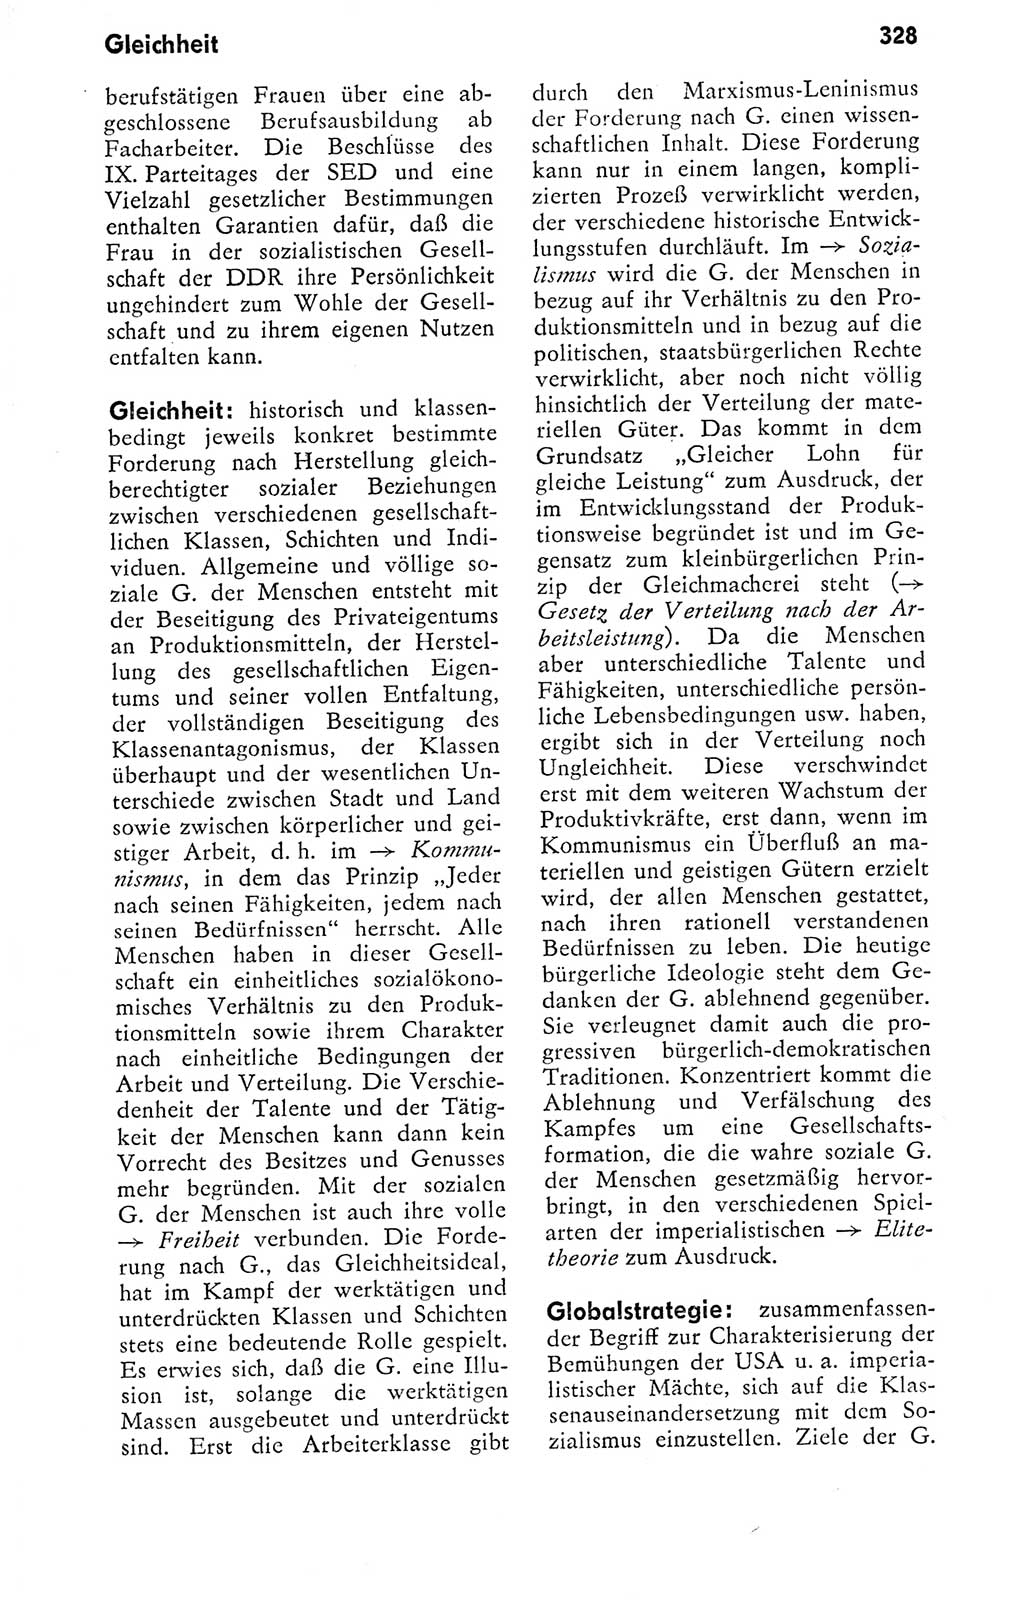 Kleines politisches Wörterbuch [Deutsche Demokratische Republik (DDR)] 1978, Seite 328 (Kl. pol. Wb. DDR 1978, S. 328)